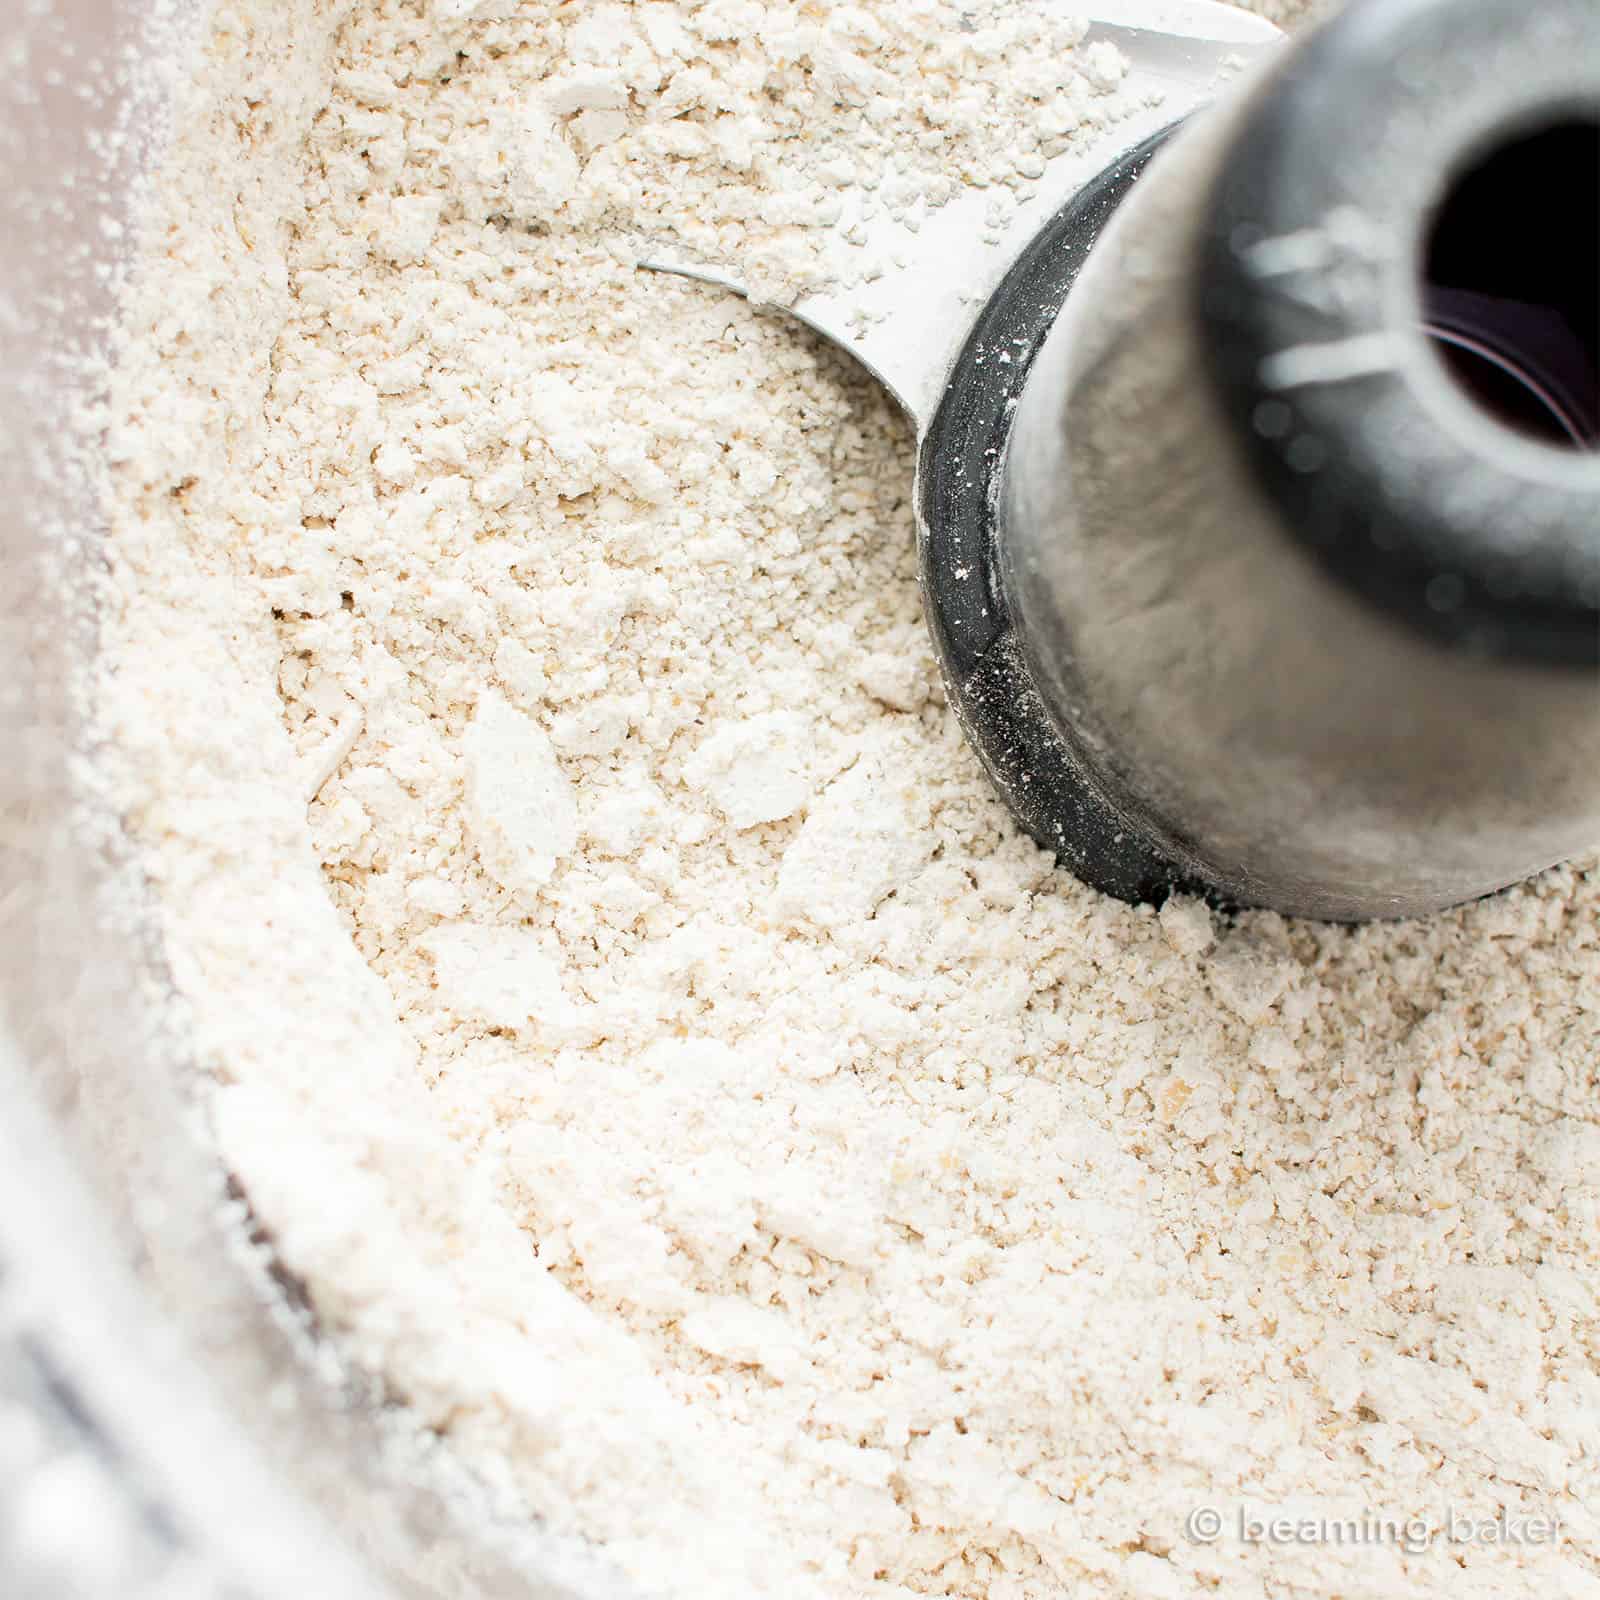 Fully blended oat flour